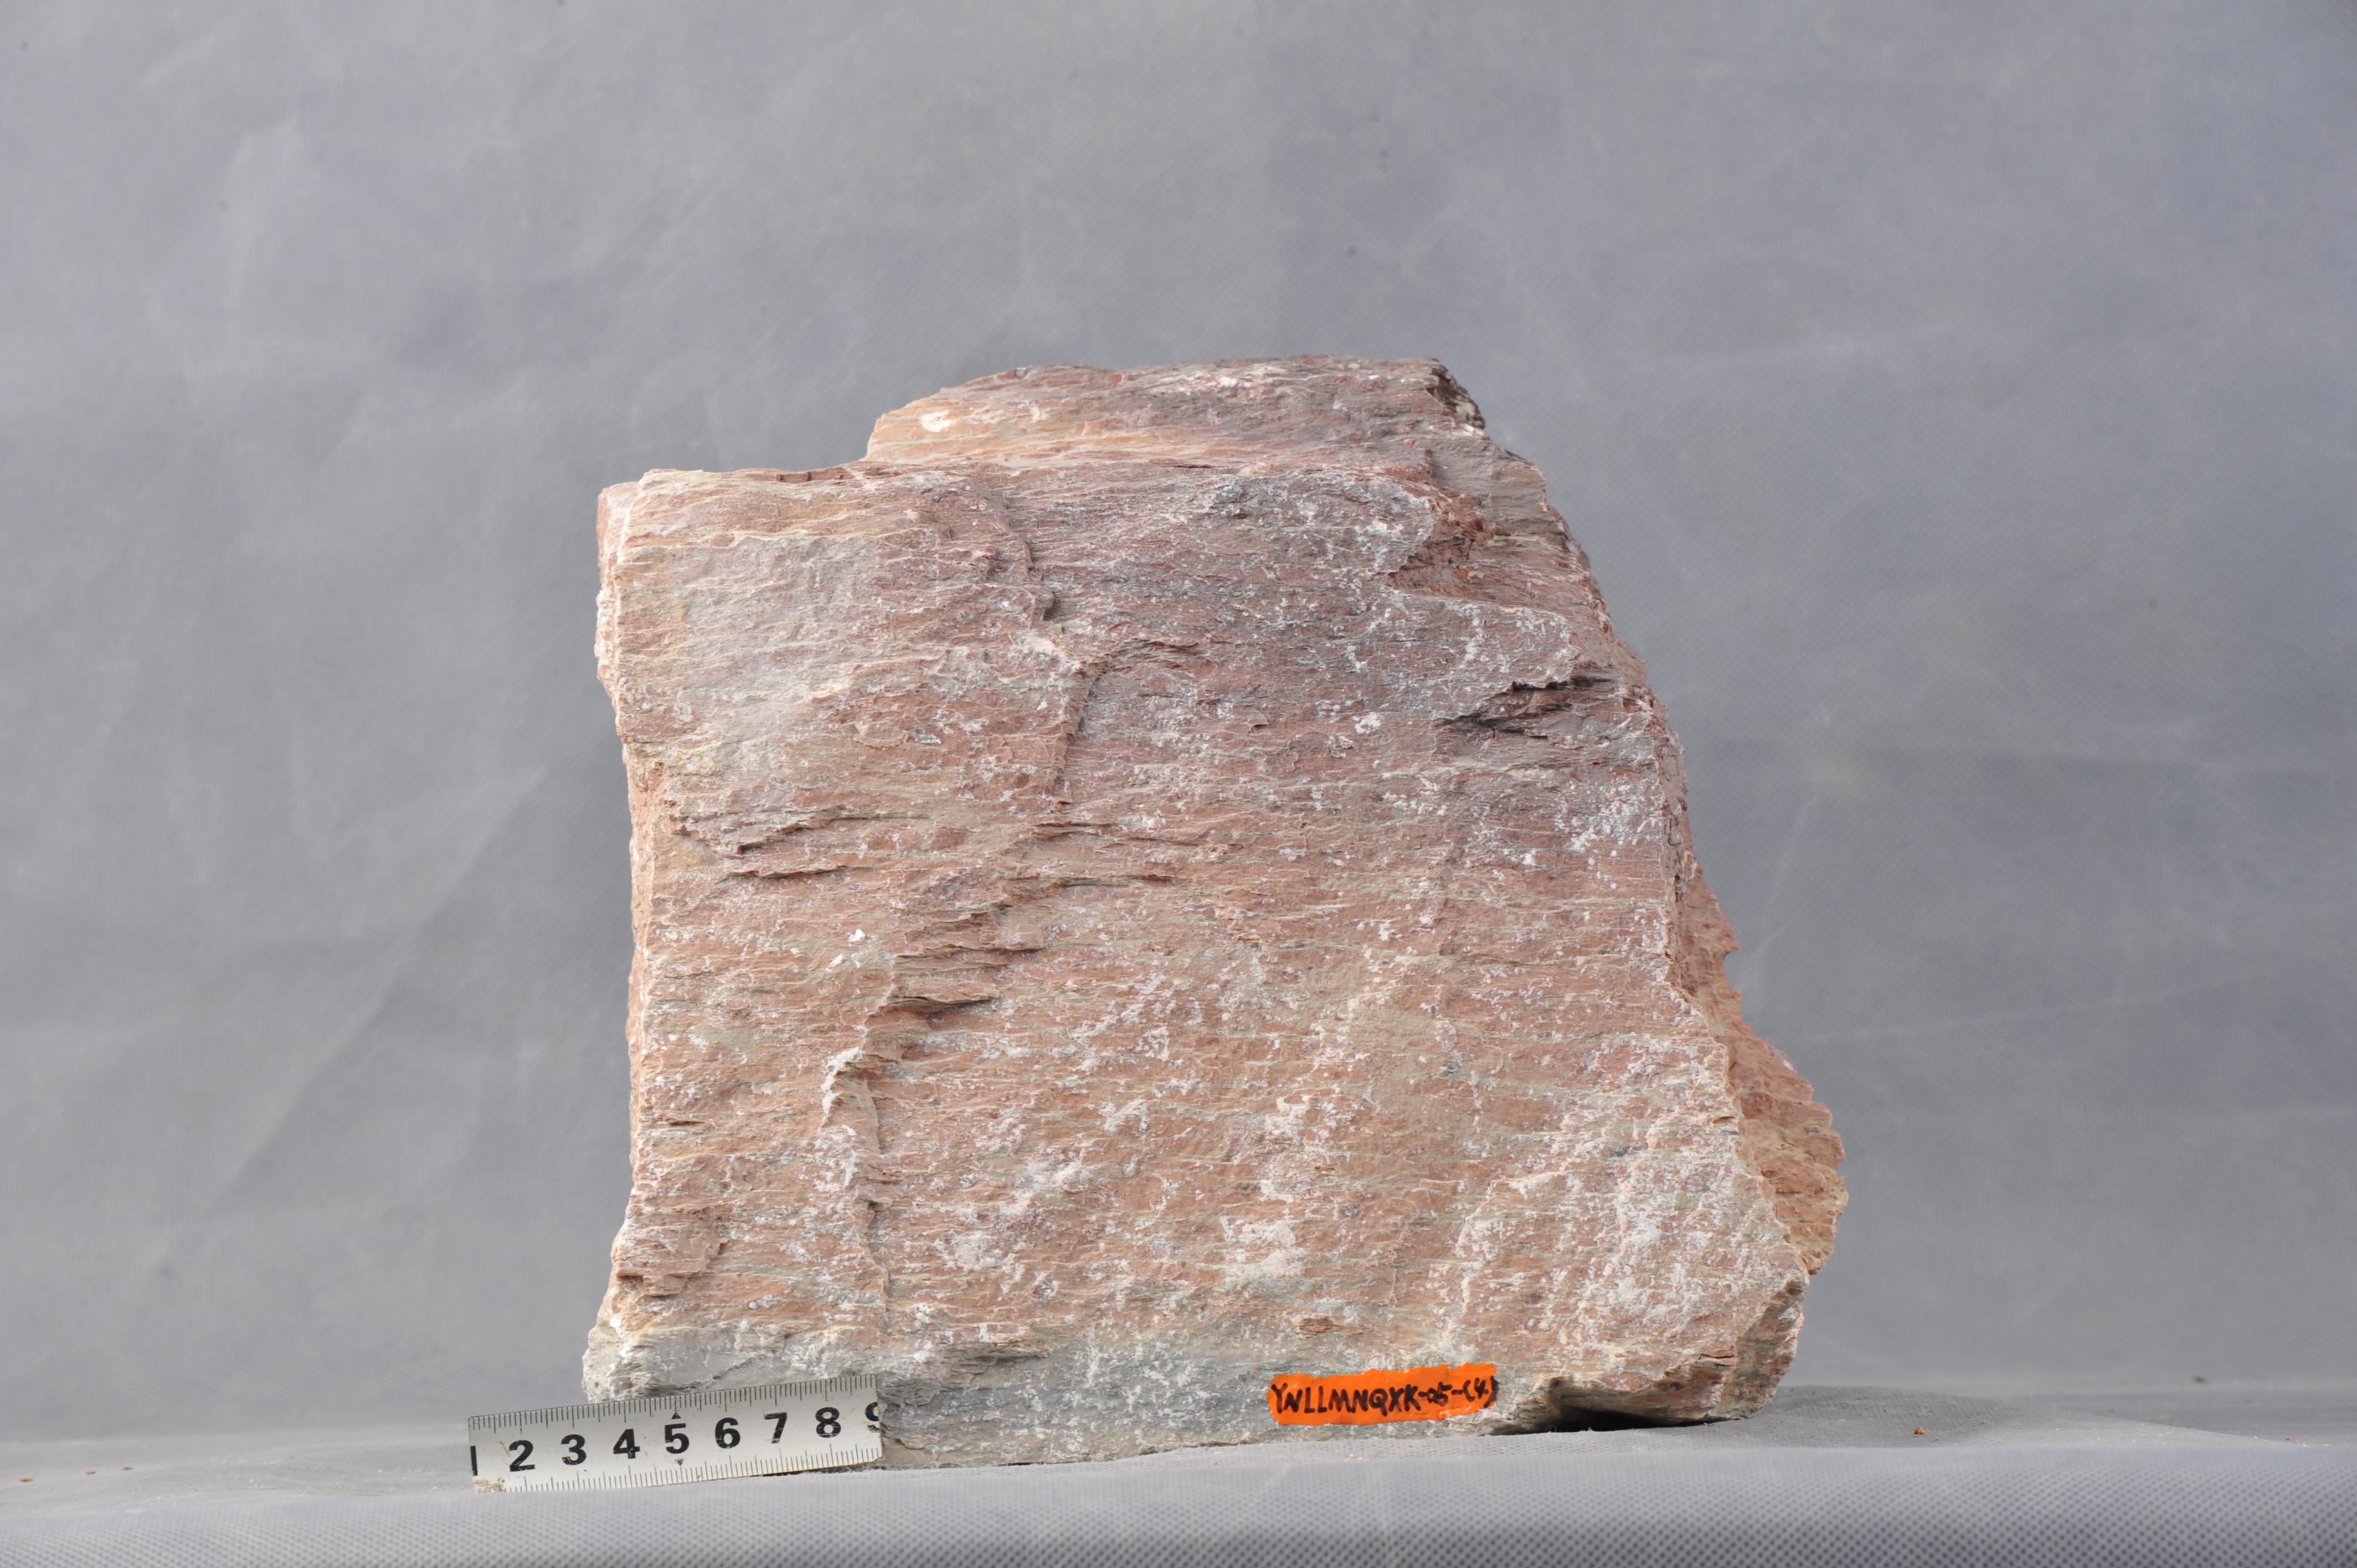 《矿物岩石学》课上的岩石标本|工程图片区 - 领先的岩土技术社区，岩土领域的媒体、社区与应用平台！